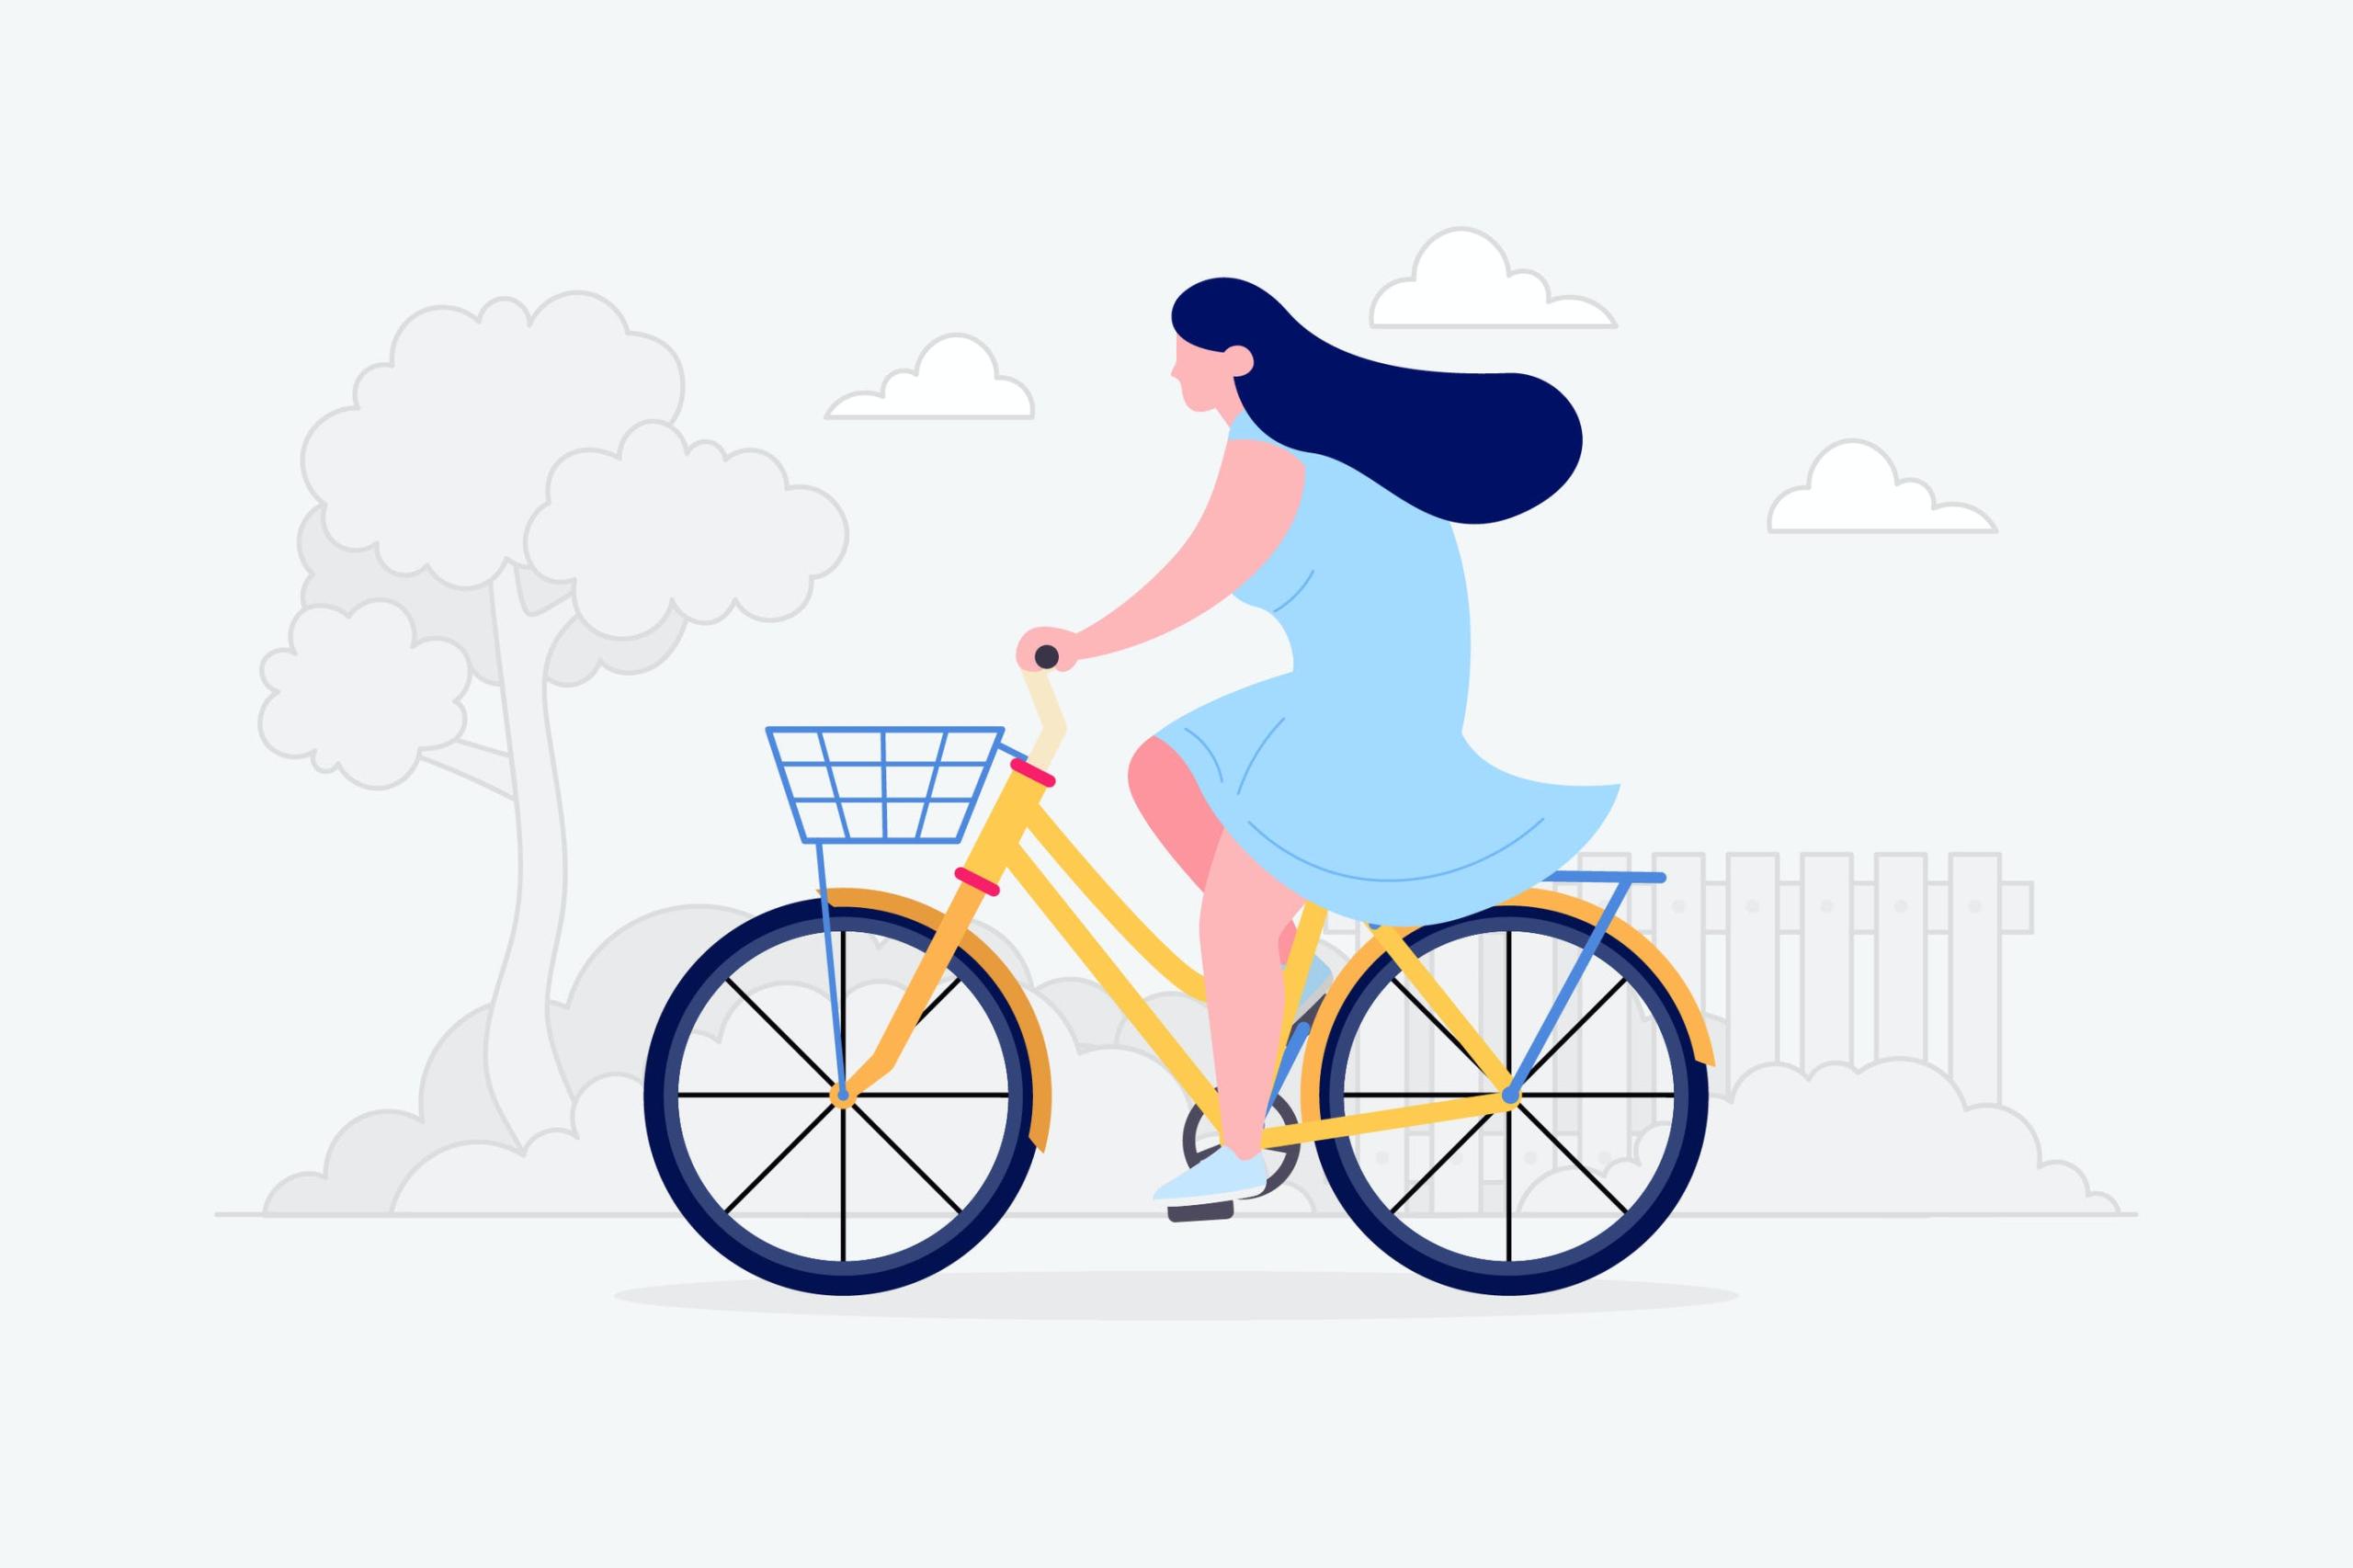 骑自行车场景矢量插画素材 Riding Bicycle Illustration